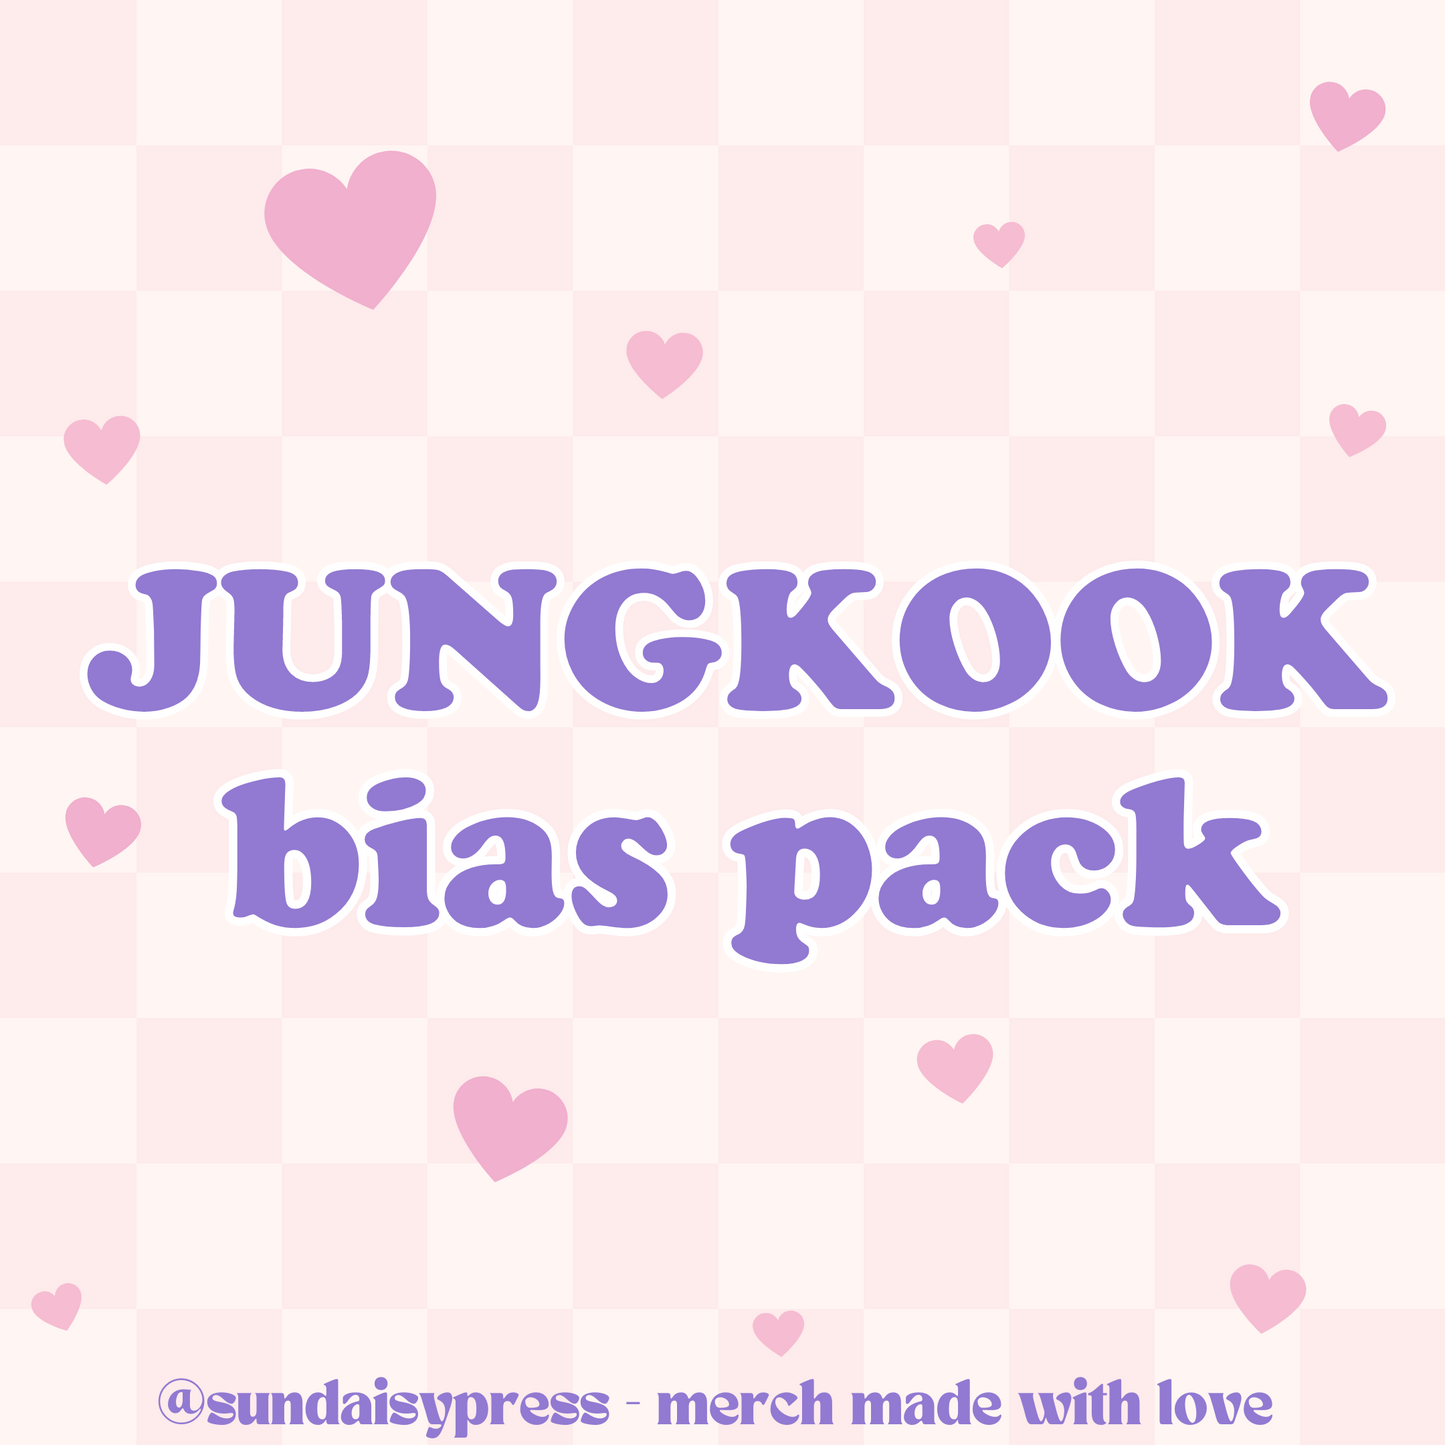 Jungkook bias pack